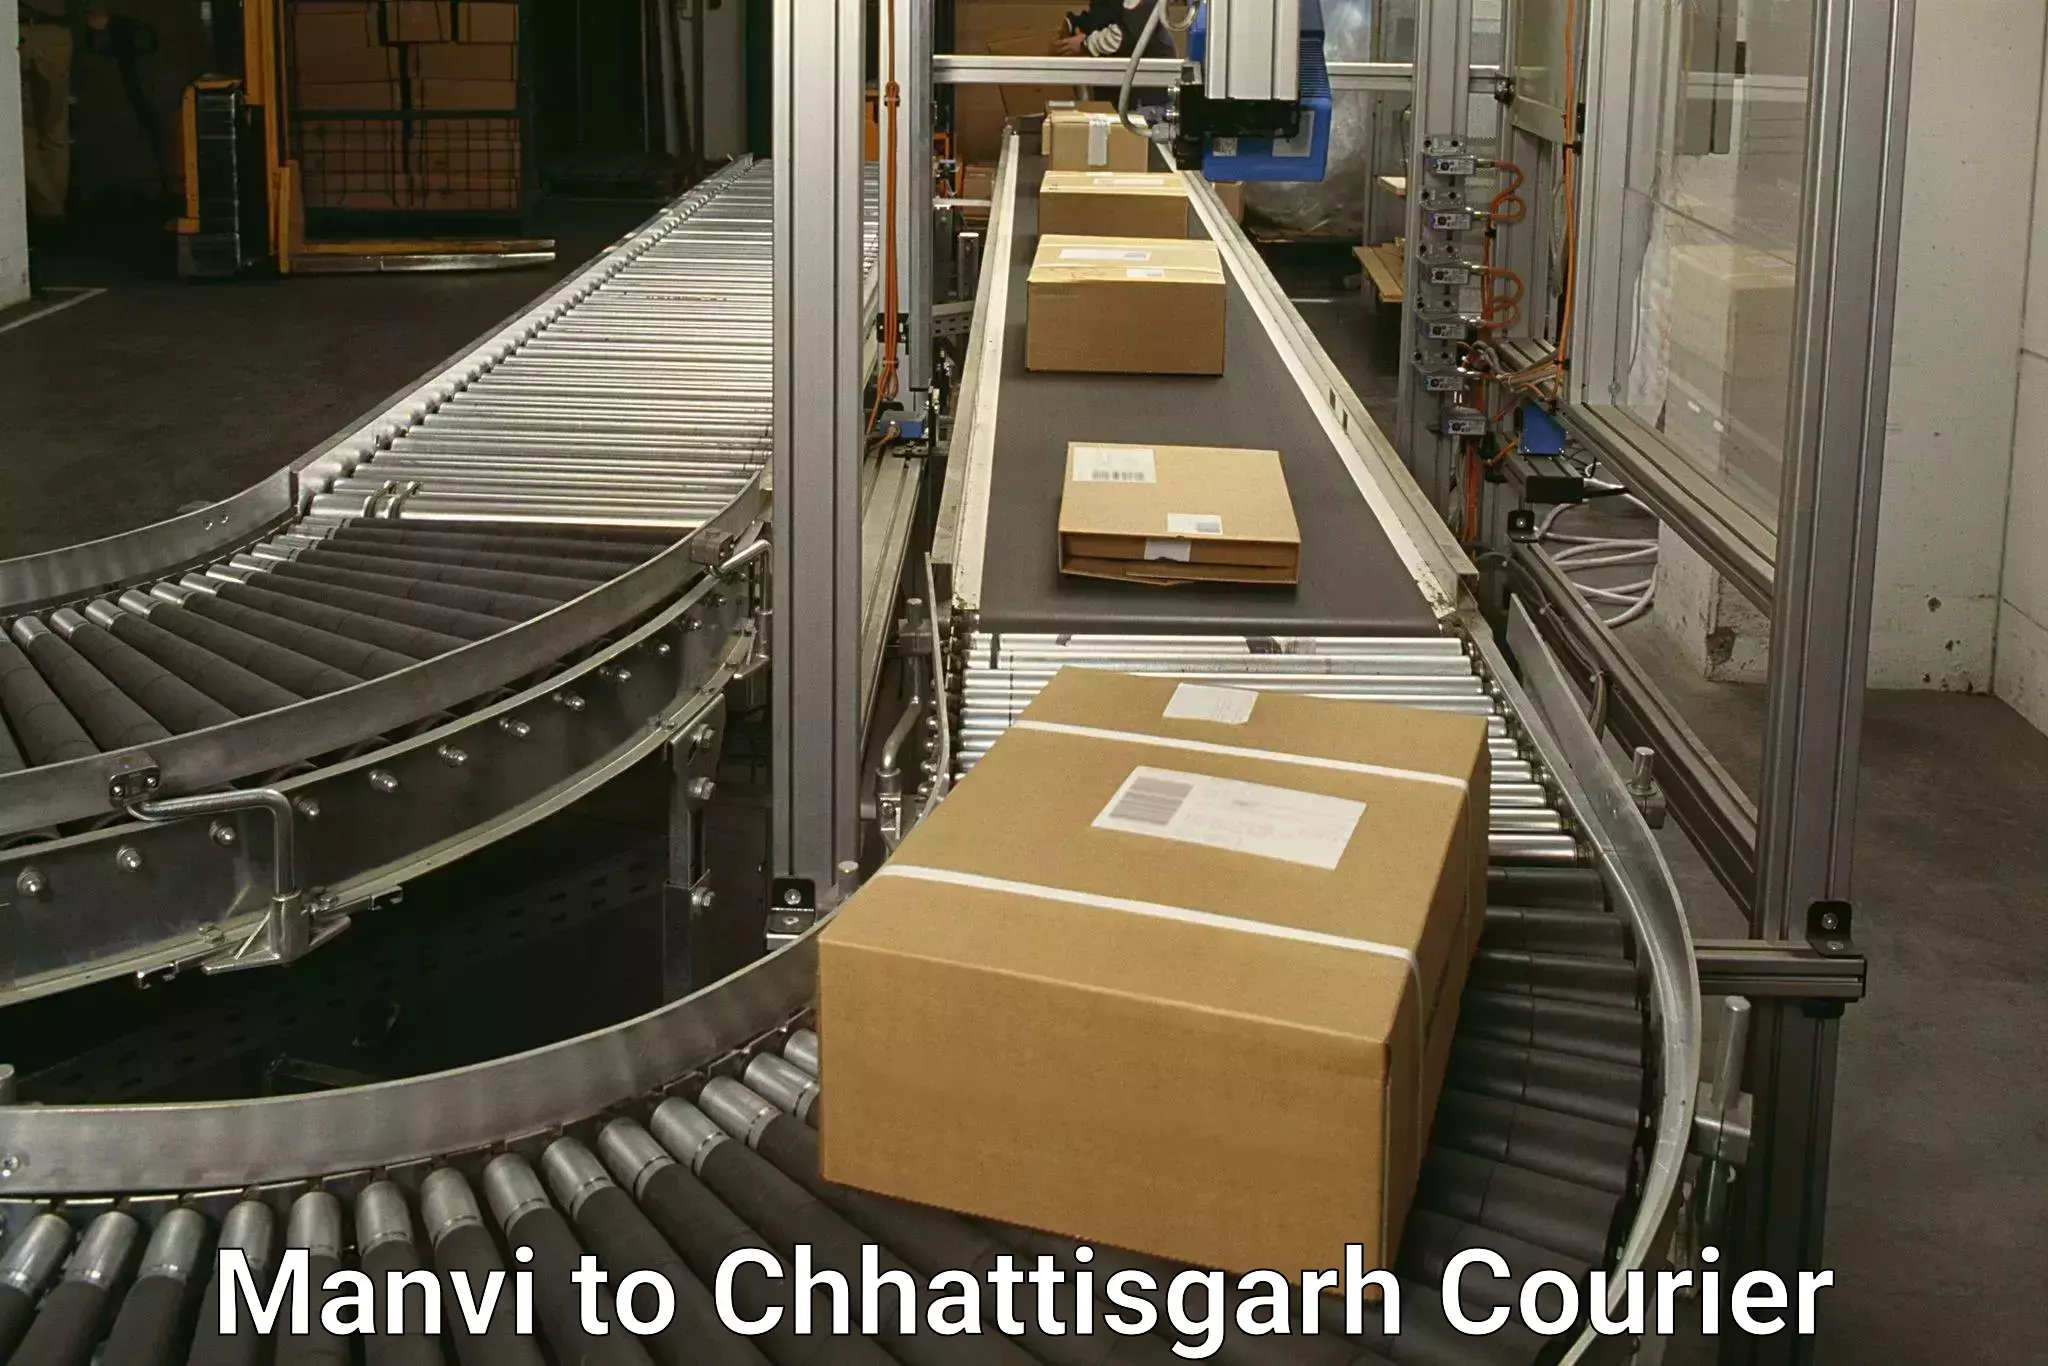 Fast delivery service in Manvi to Chhattisgarh